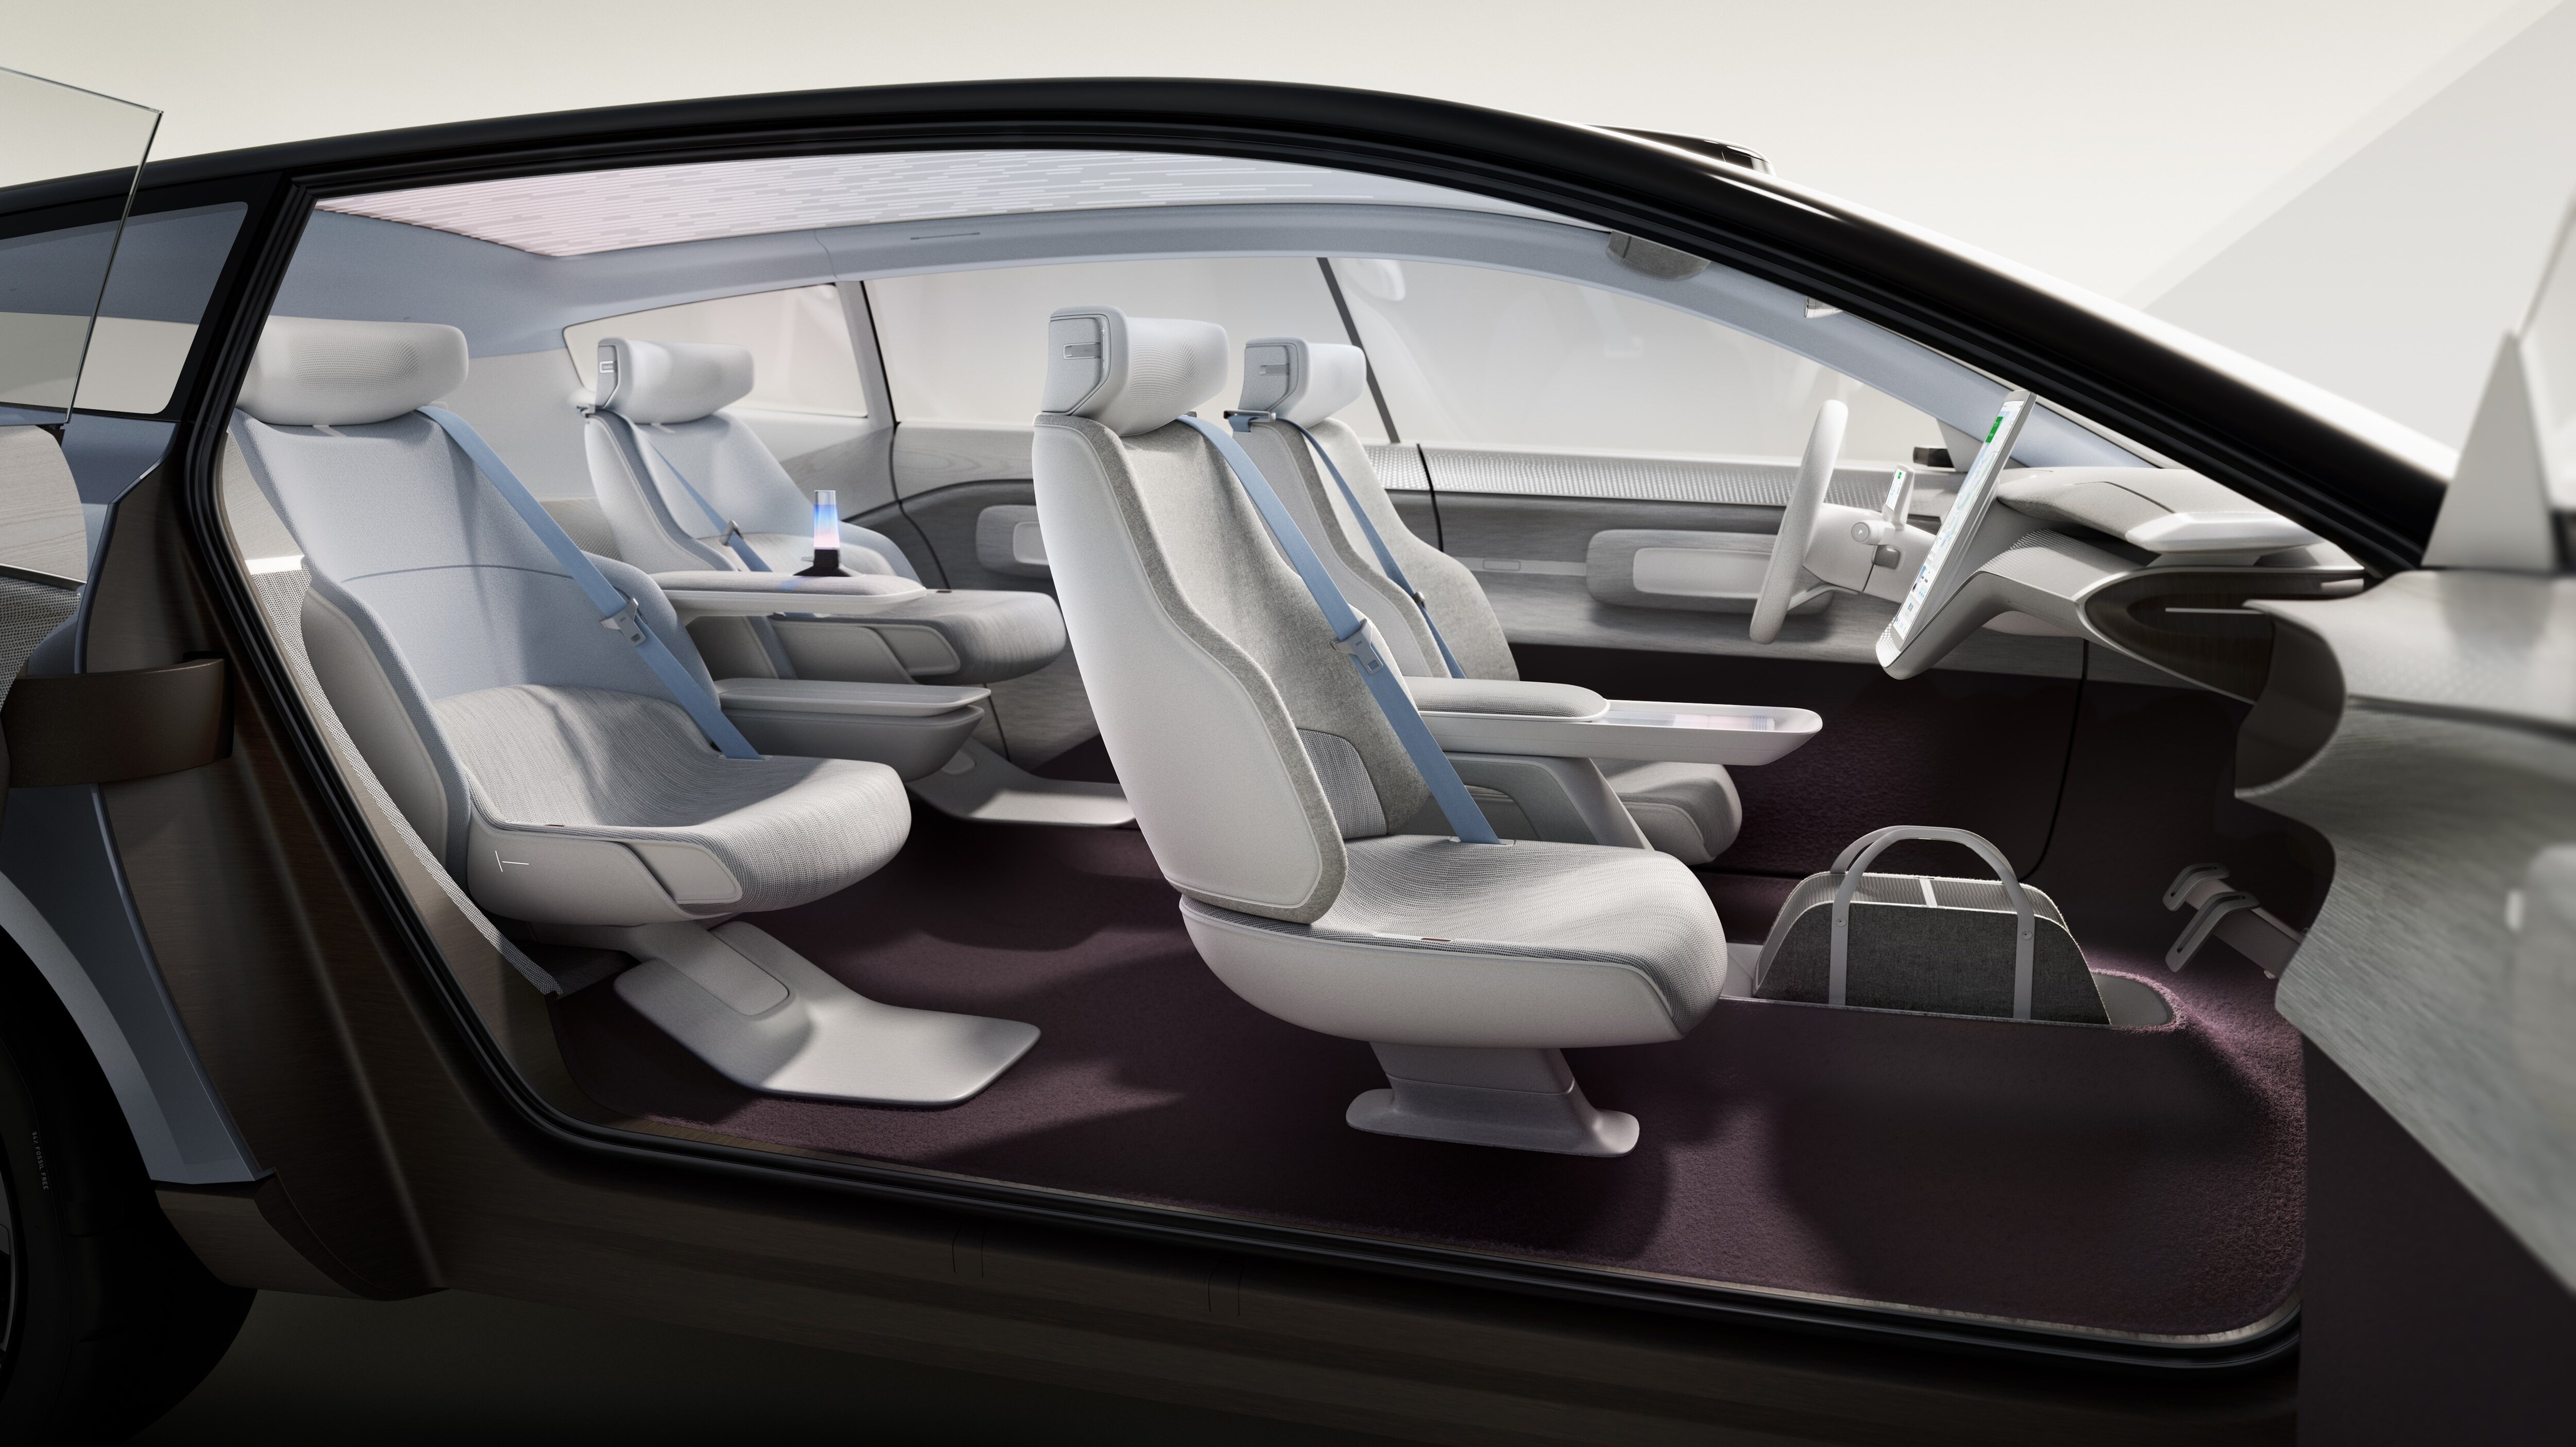 Το Volvo Concept Recharge είναι ένα μανιφέστο για το ηλεκτρικό μέλλον της Volvo